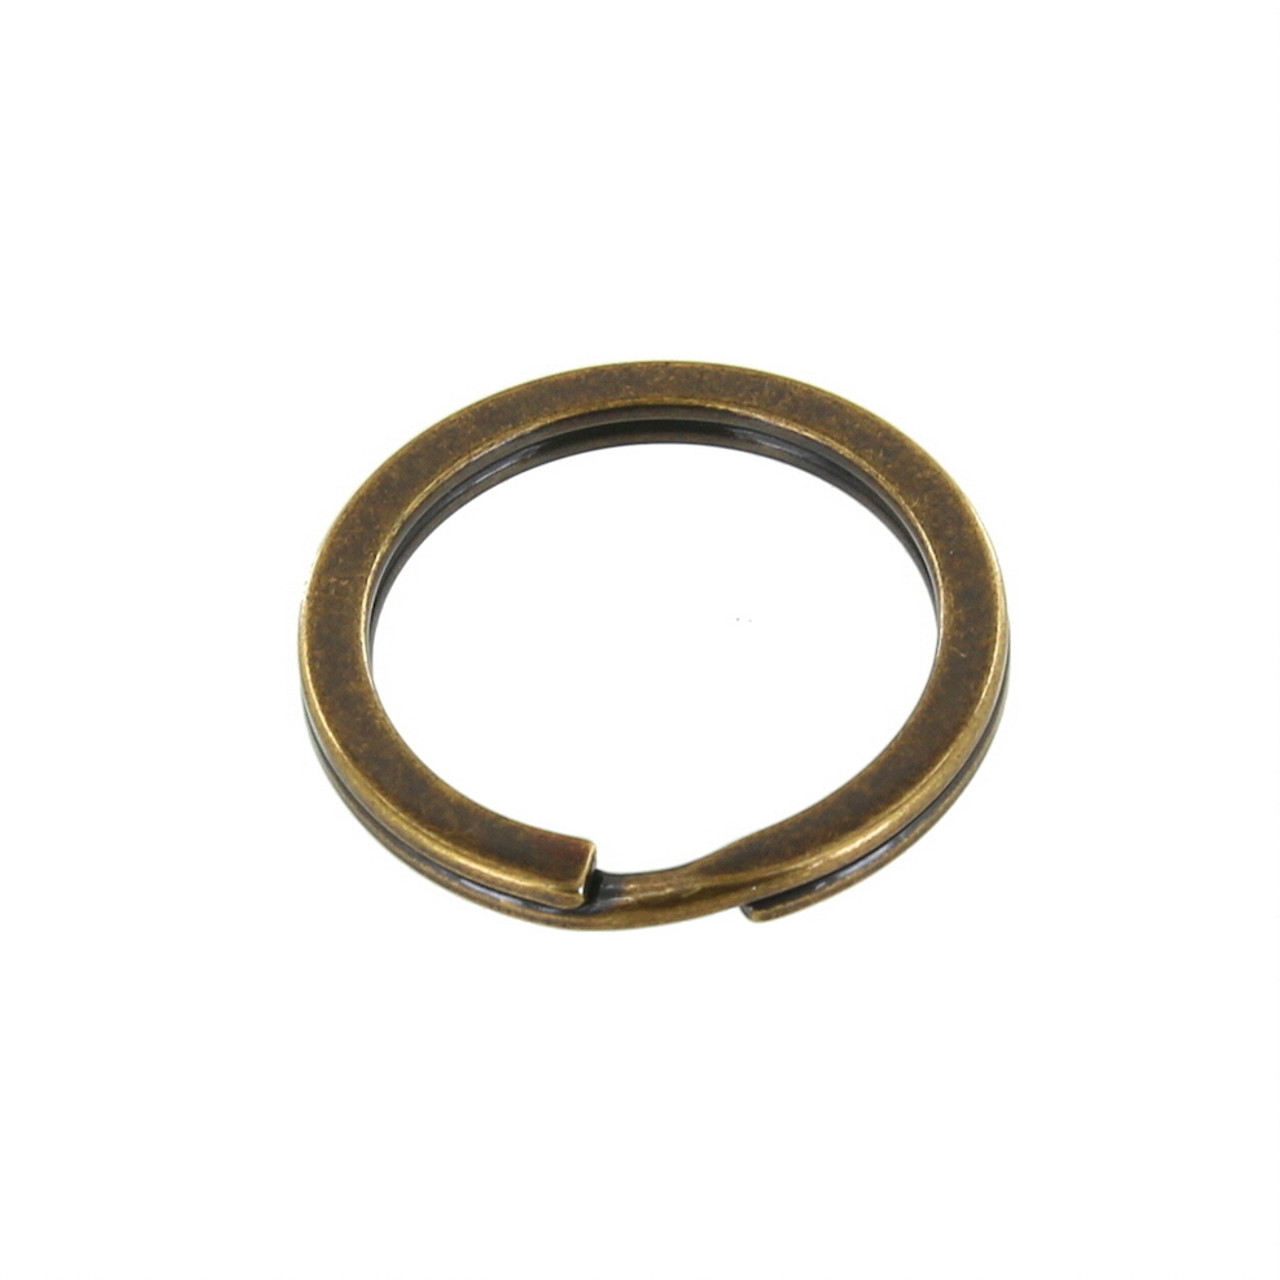 Buckleguy Key Ring | | 1 (B2020-26-DOEB)